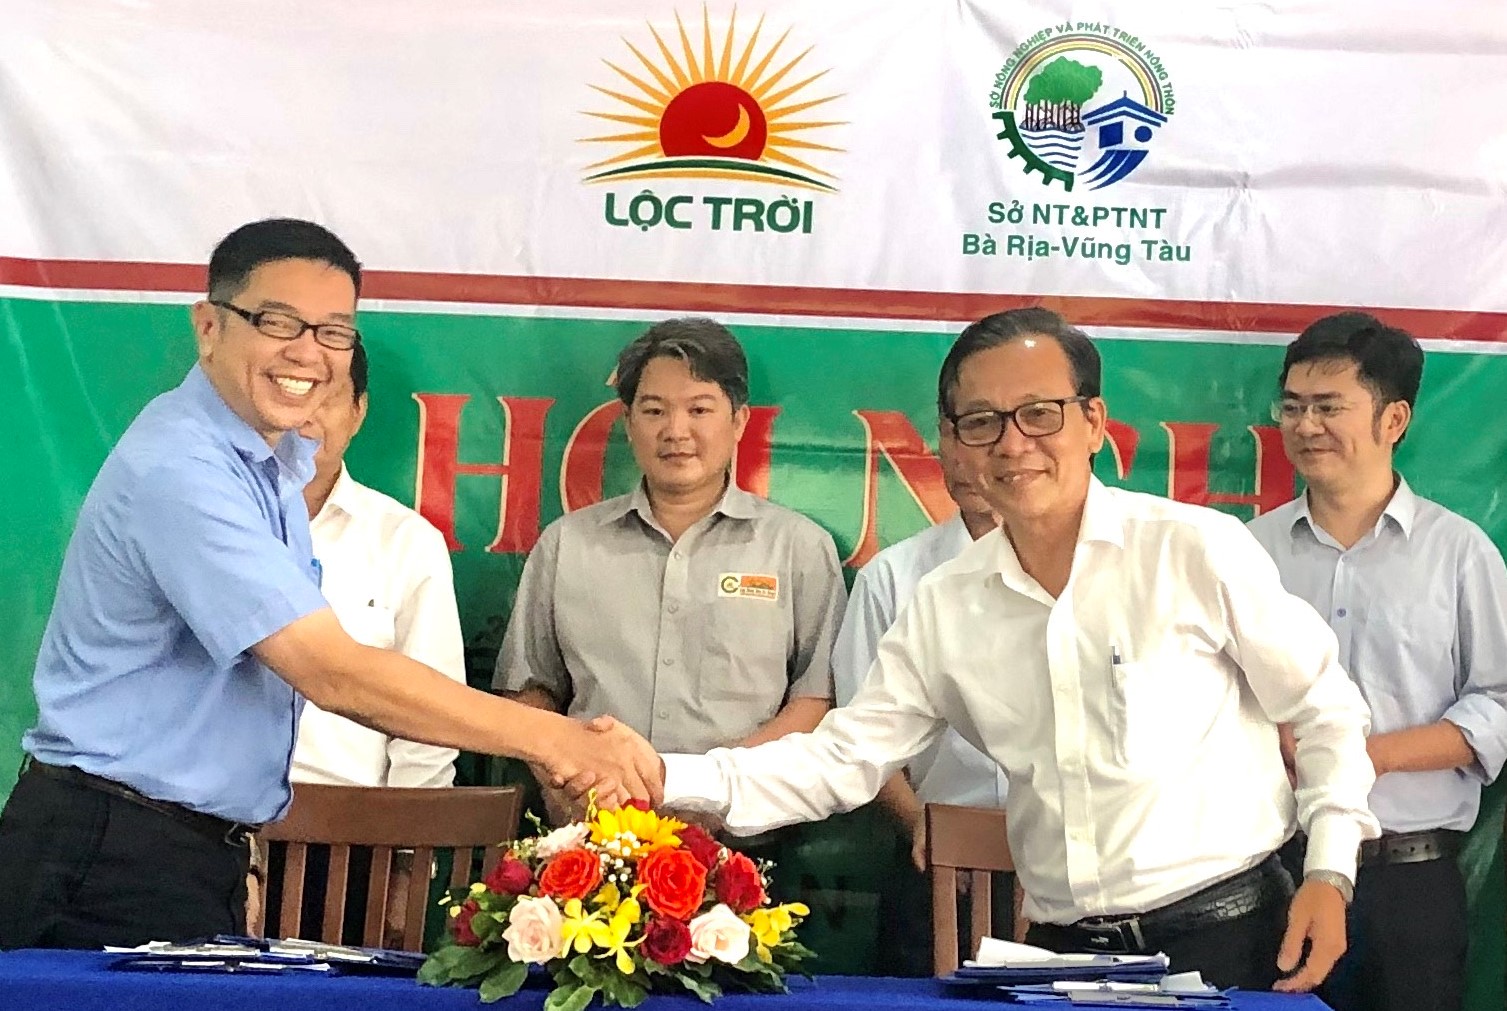 Ông Trần Văn Cường, Giám đốc Sở NN-PTNT và đại diện Tập đoàn Lộc Trời ký biên bản ghi nhớ liên kết, tiêu thụ sản phẩm lúa trên địa bàn tỉnh.